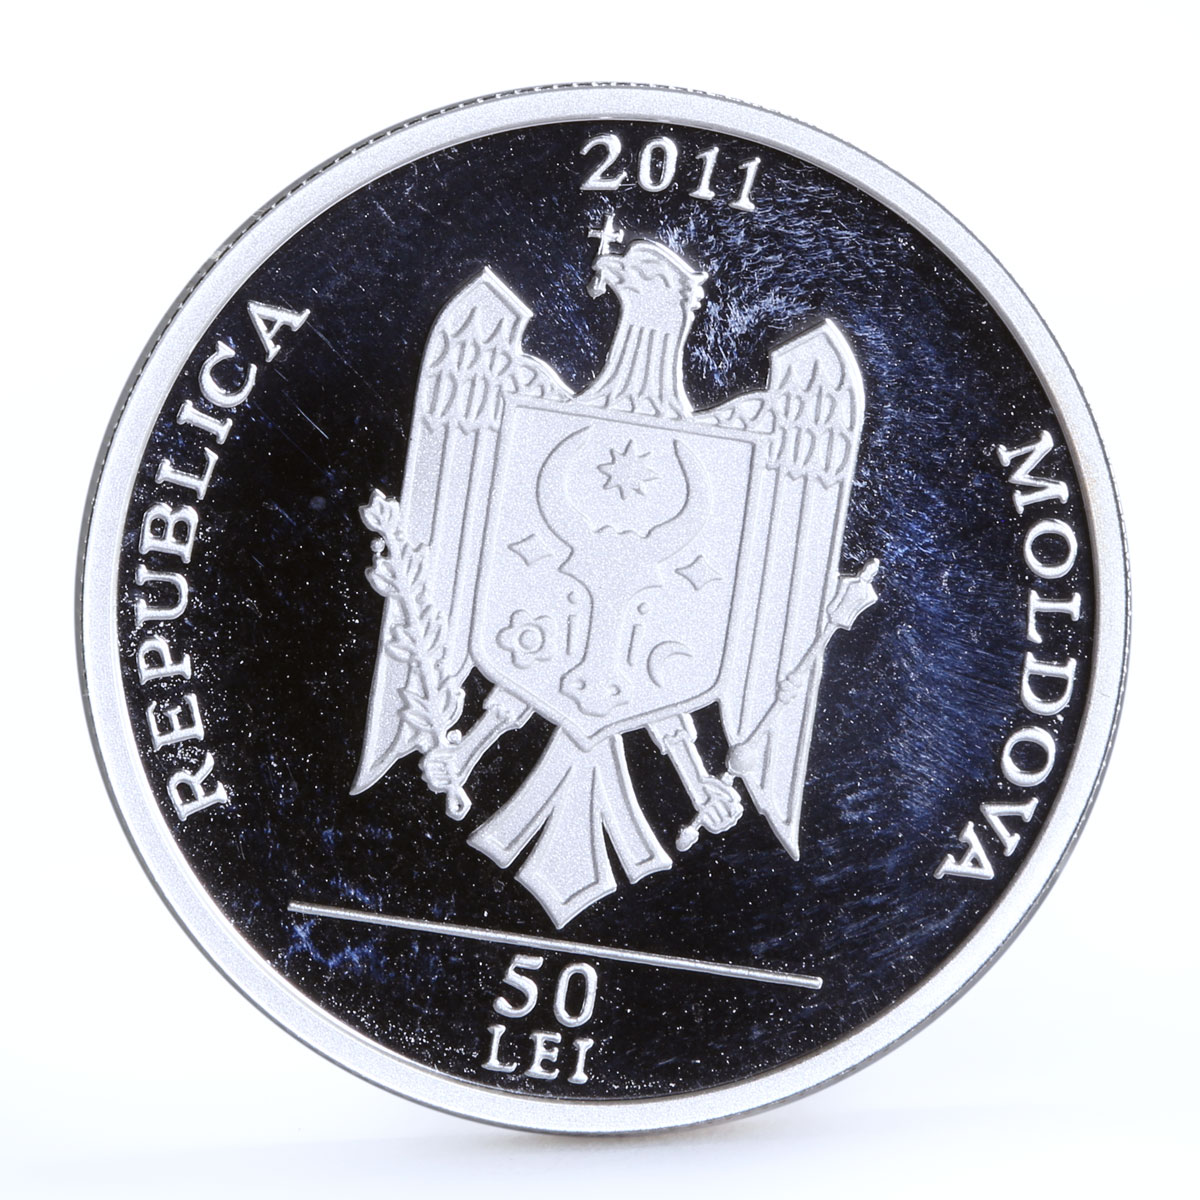 Moldova 50 lei Endangered Wildlife Eurasian Spoonbill Bird silver coin 2011